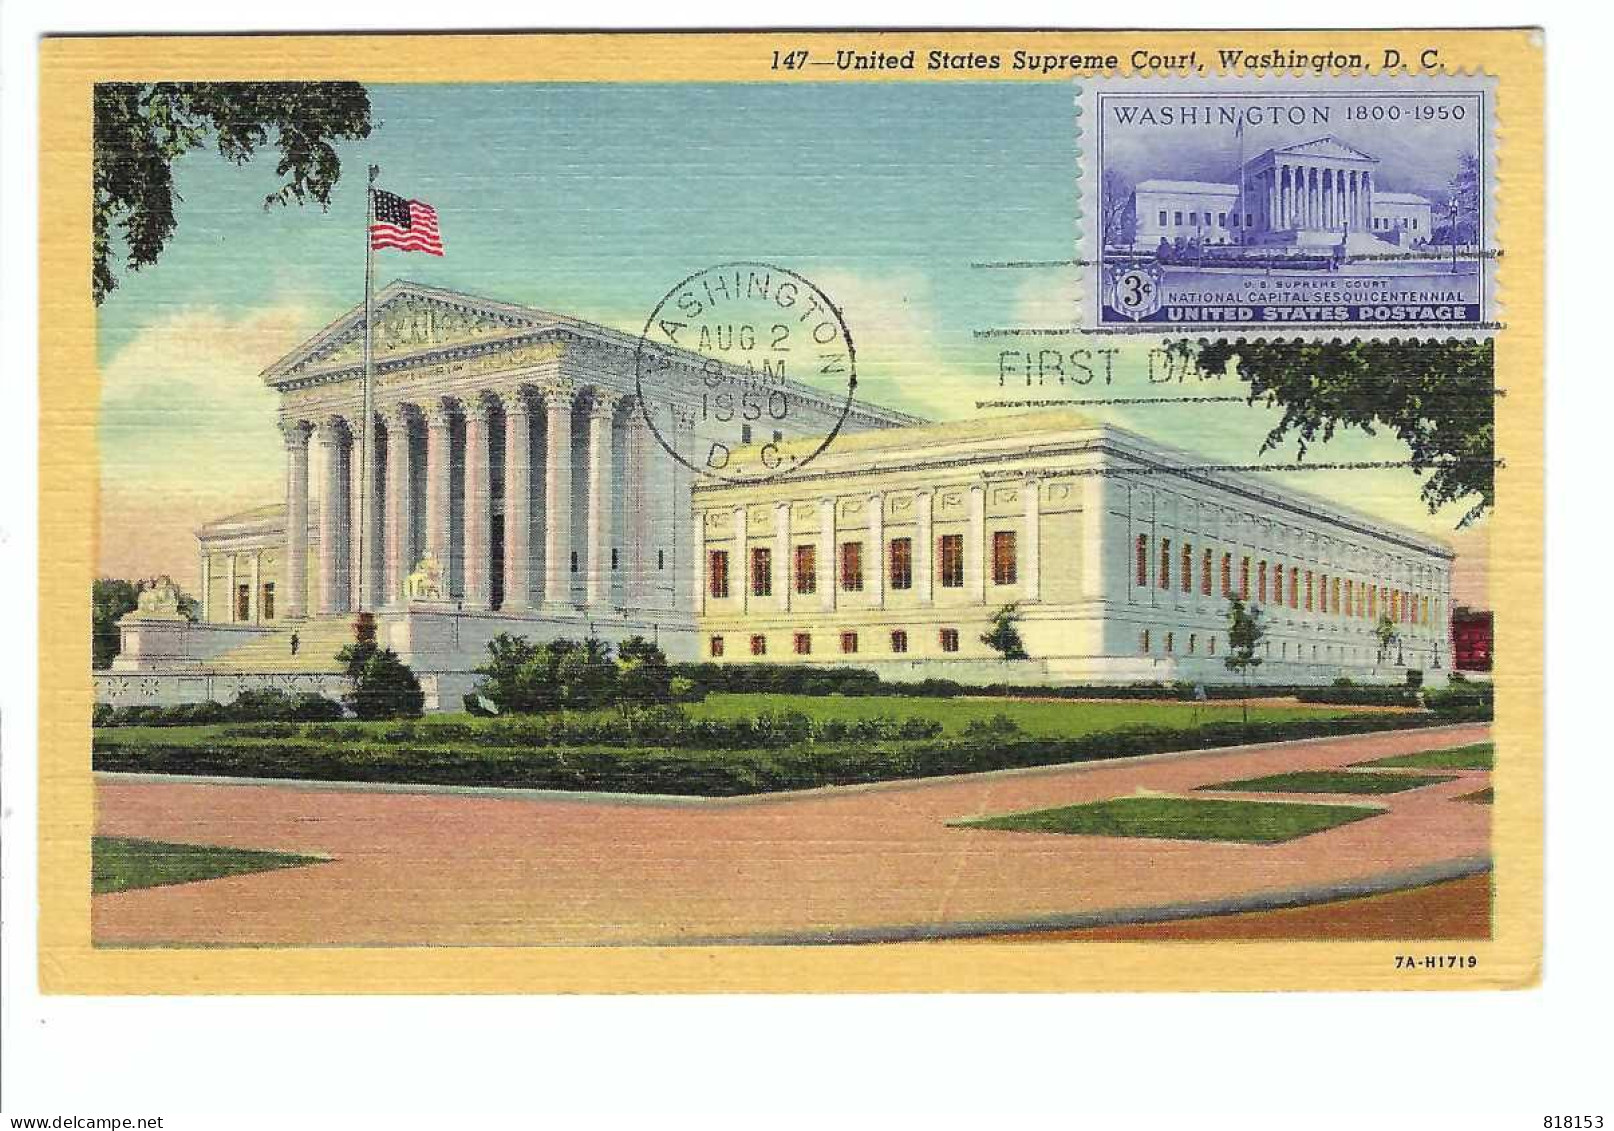 FDC  147 - United States Supreme Court , Washington D C     AUG 2 1950 - Oblitérés